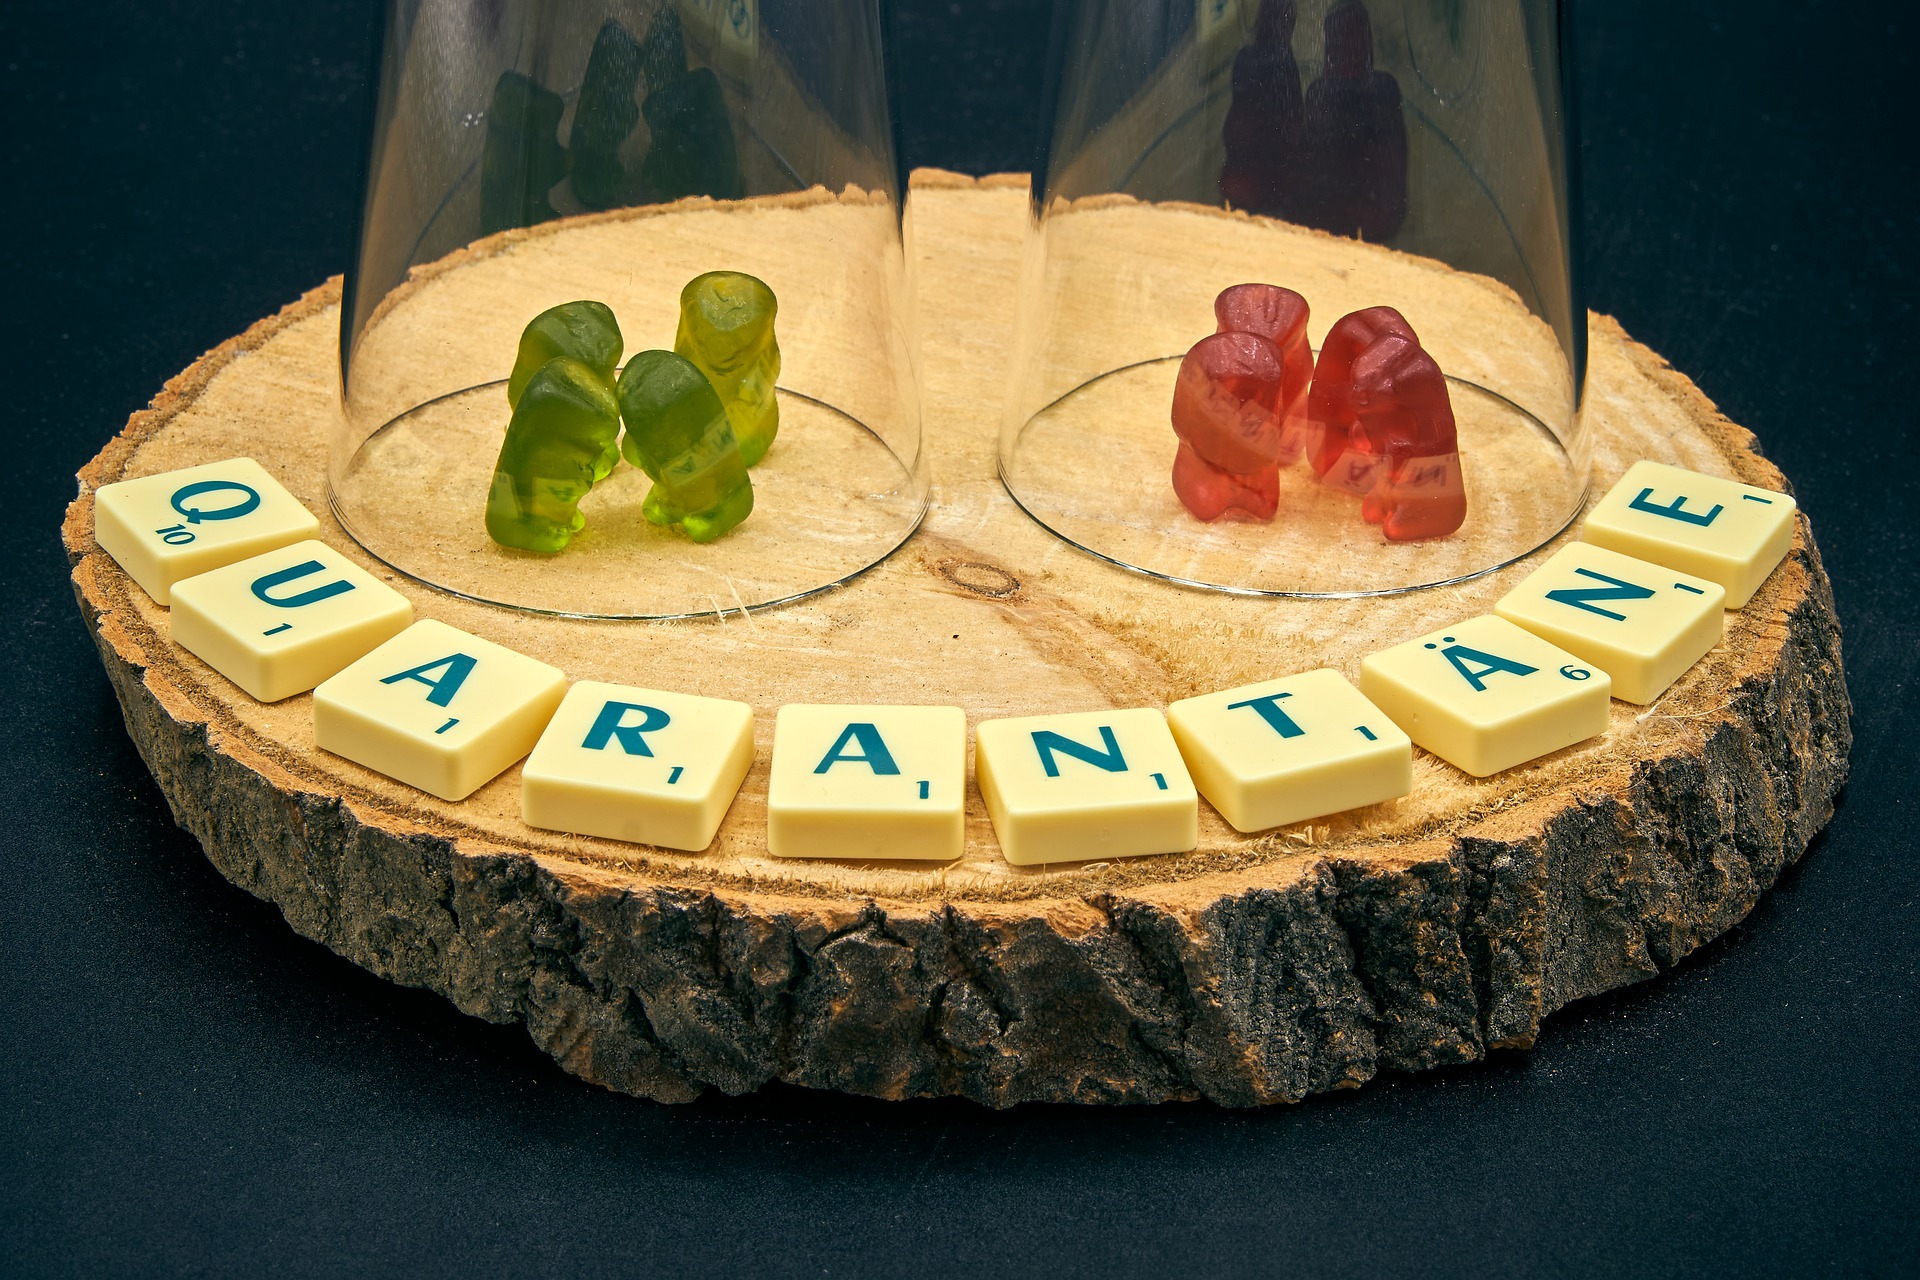 Auf einer Baumscheibe ist mit Scrabble-Buchstaben das Wort Quarantäne gelegt. Darüber stehen zwei Kleingruppen aus Gummibärchen, eine grün und eine rot, jeweils unter einer Glaskuppel